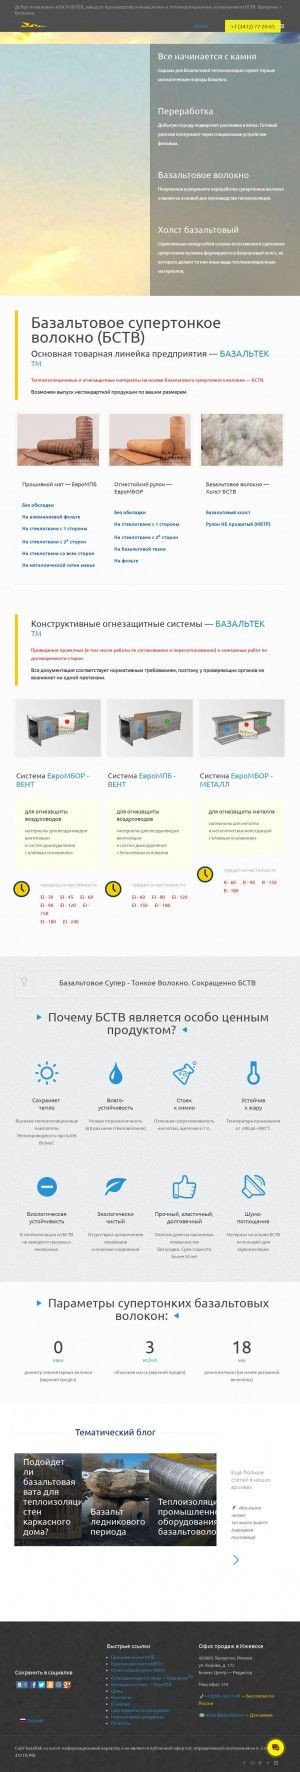 Предпросмотр для bazaltek.ru — Базальтек